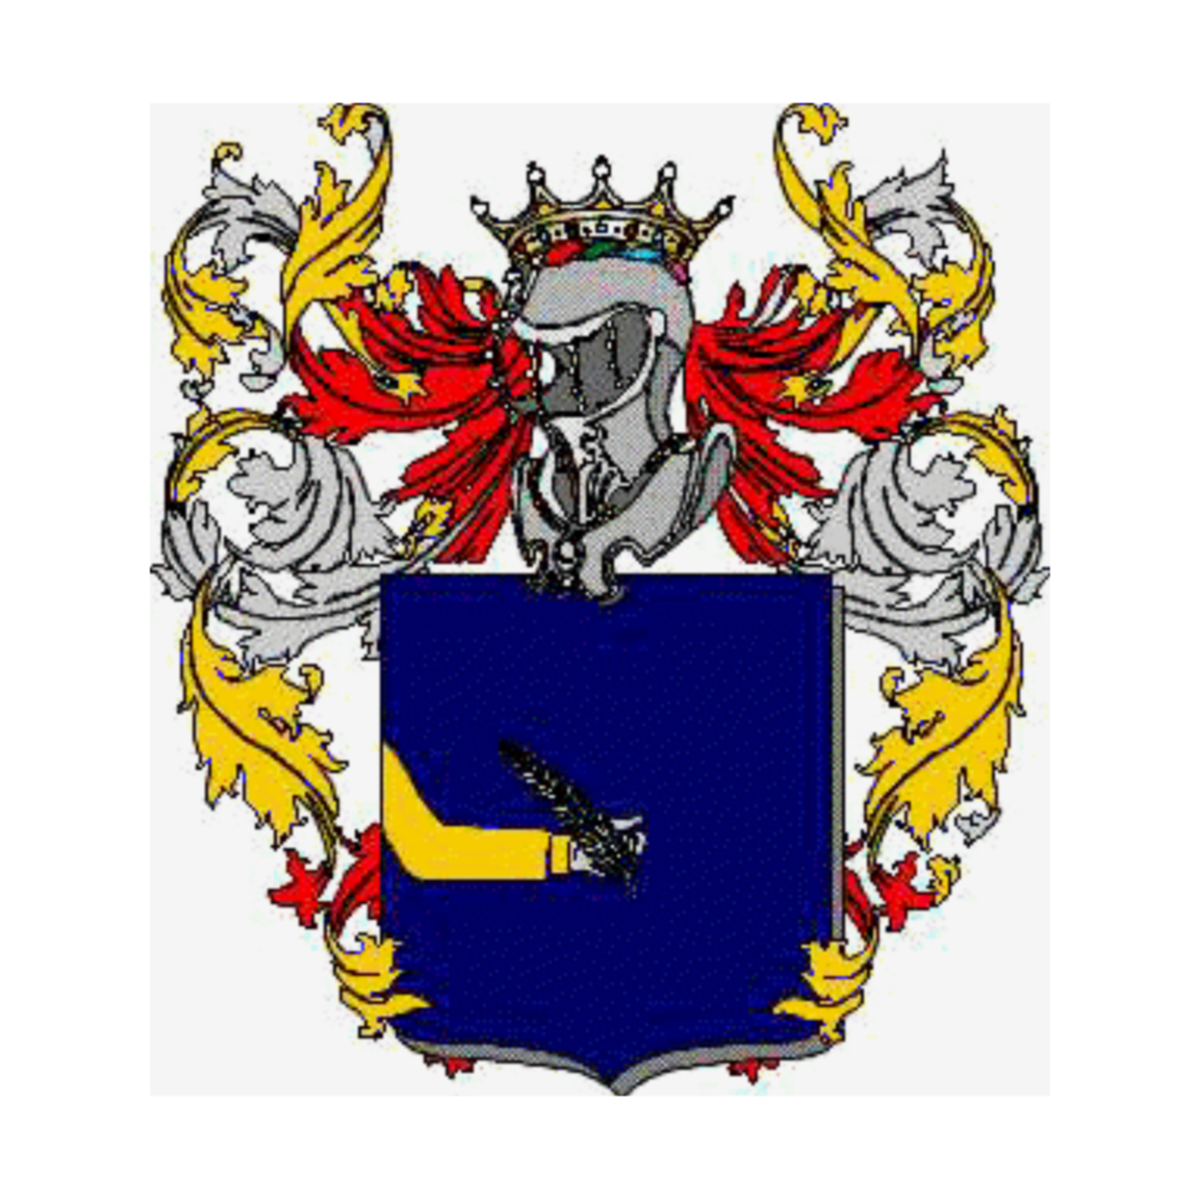 Wappen der Familie Domengoni